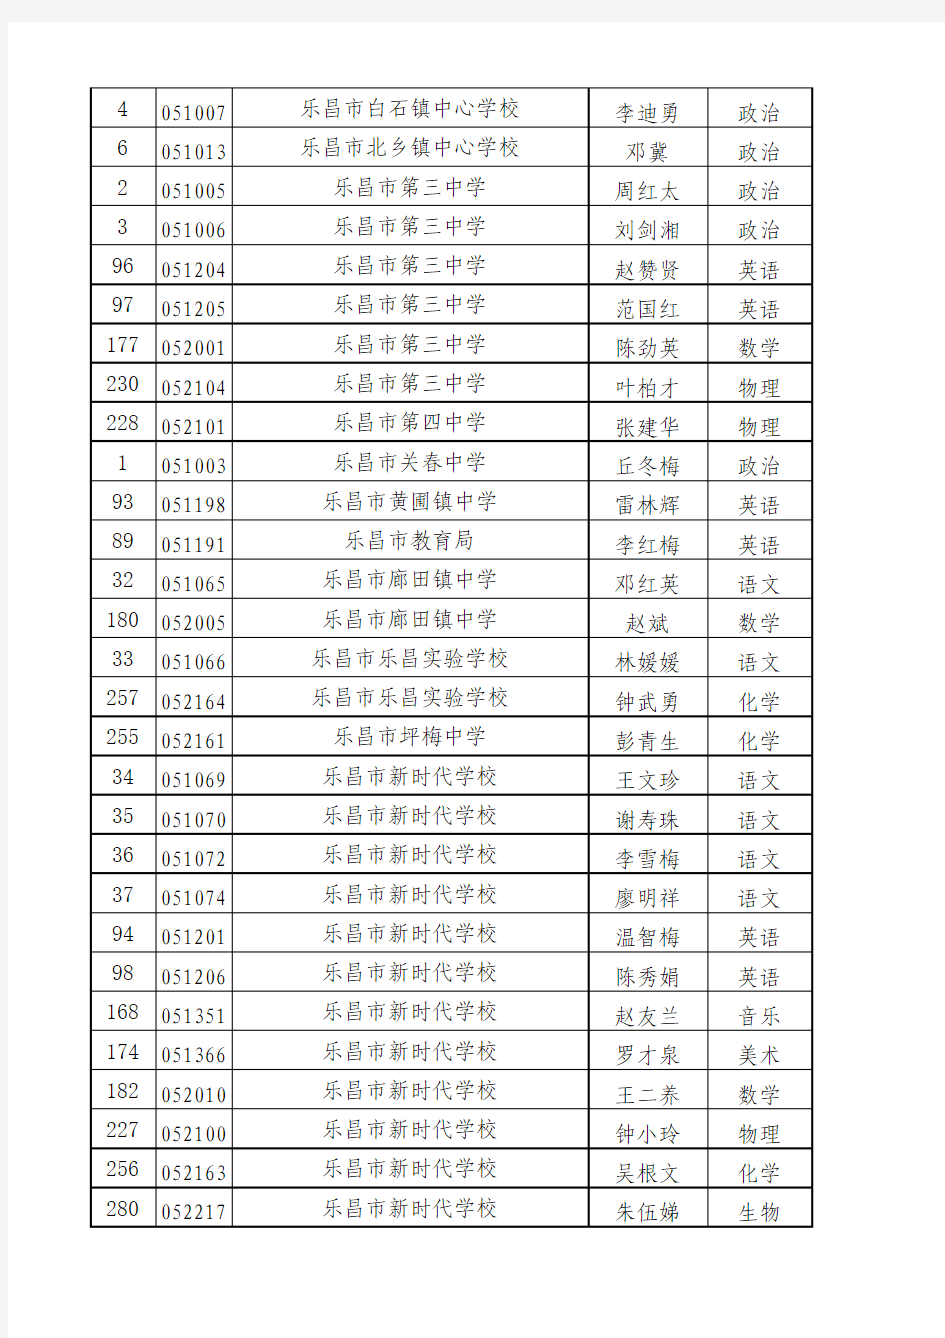 2012广东中学高级职称公示名单